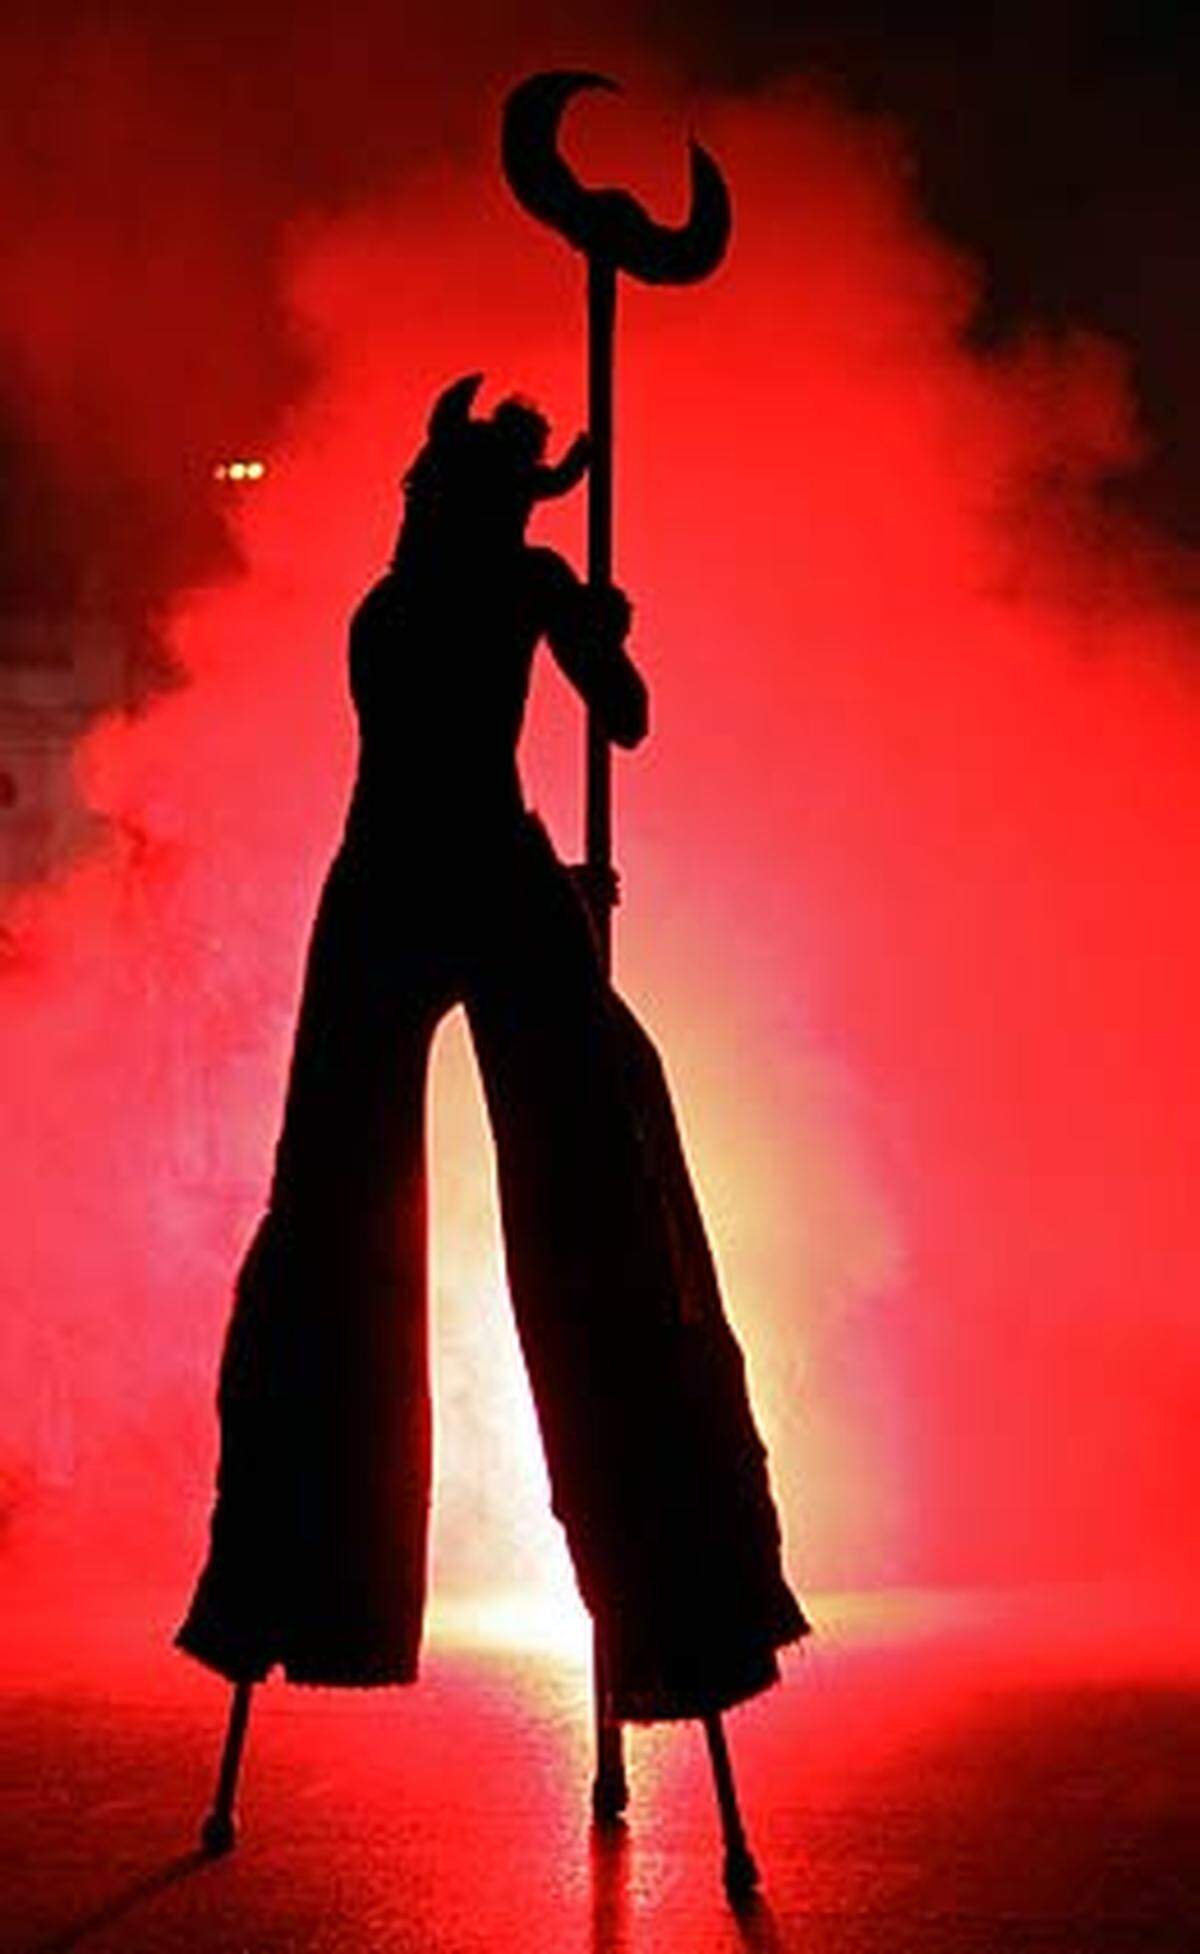 Der Teufel sei überall, heißt es im neuen Exorzismusritus des Katechismus der Katholischen Kirche (KKK). Im Bild: Ein Schausteller als Dämon.